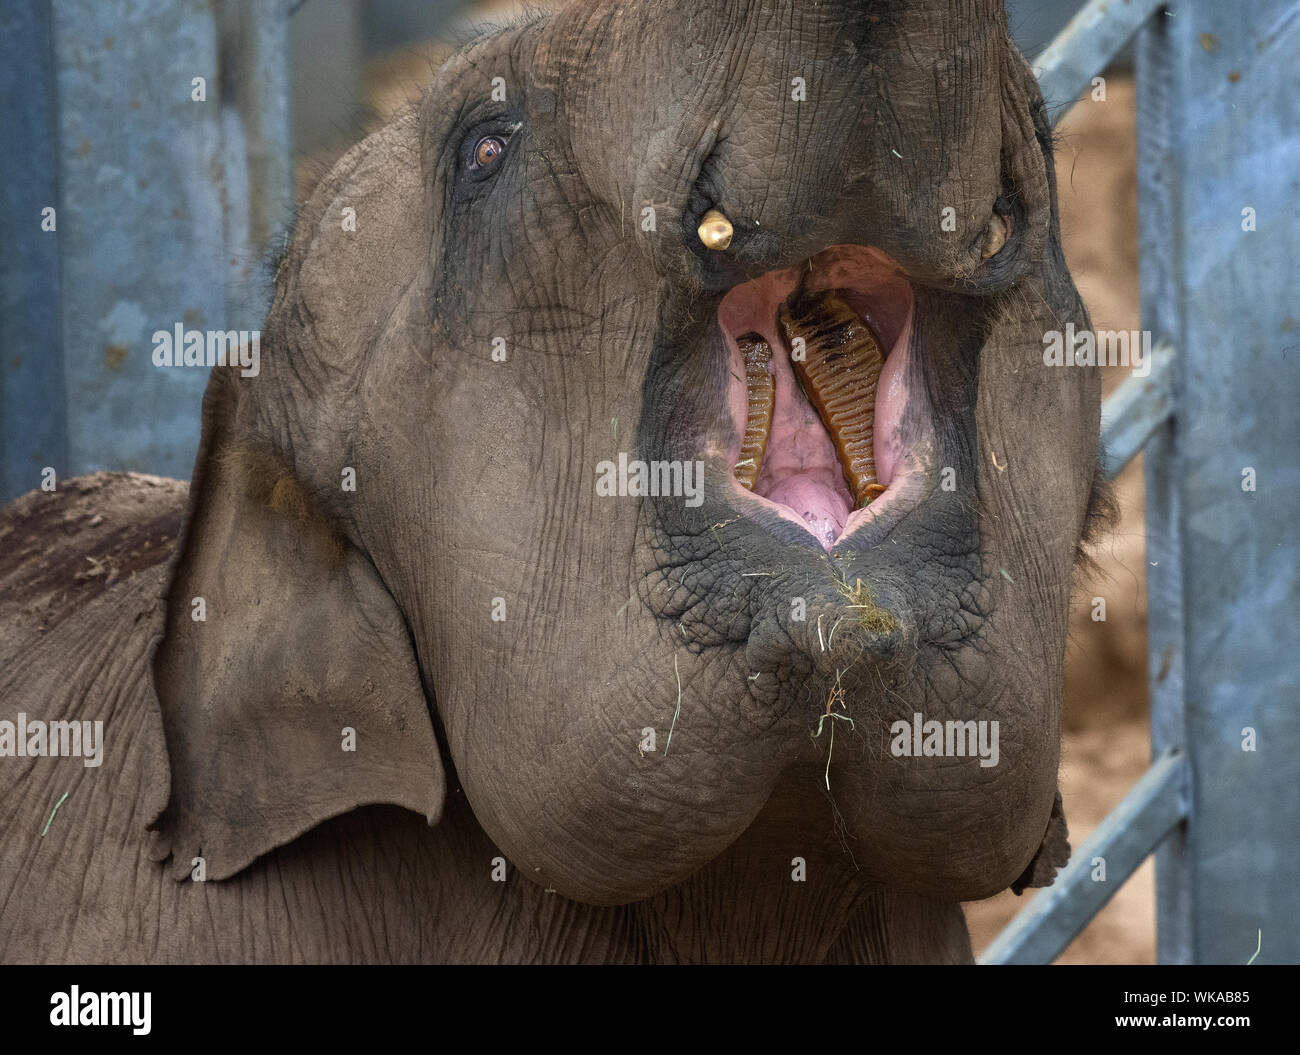 Asian elephant, Elephas maximus, showing its teeth, Blackpool Zoo, Lancashire, UK Stock Photo